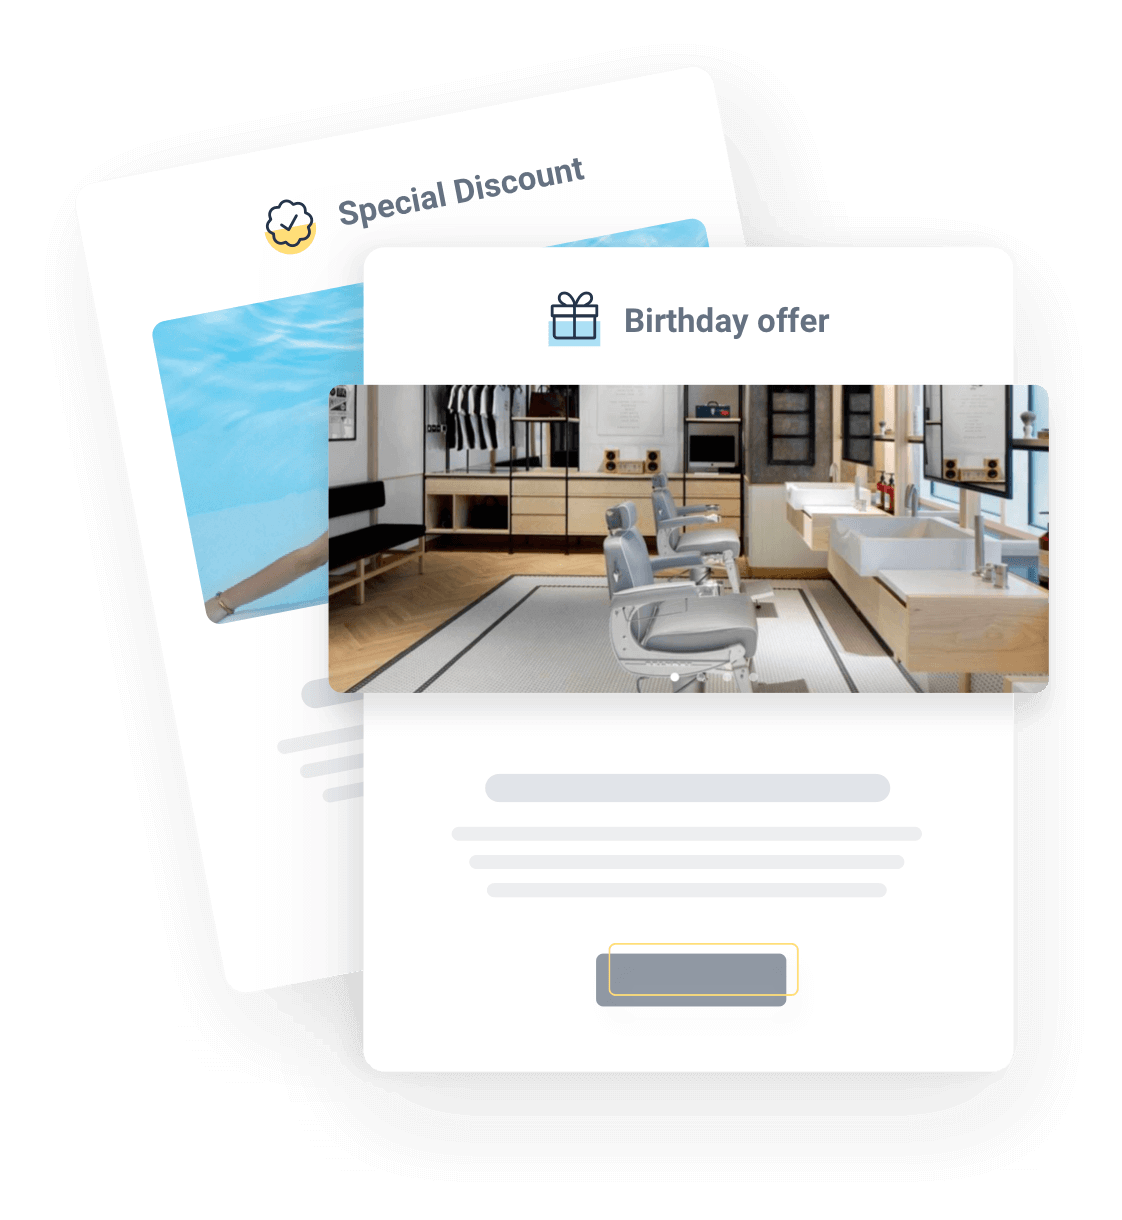 Zmaksymalizuj potencjał swojego salonu dzięki oprogramowaniu Fresha do rezerwacji wizyt, które umożliwia łatwe umawianie wizyt online i zarządzanie nimi w celu poprawy wrażeń klientów.